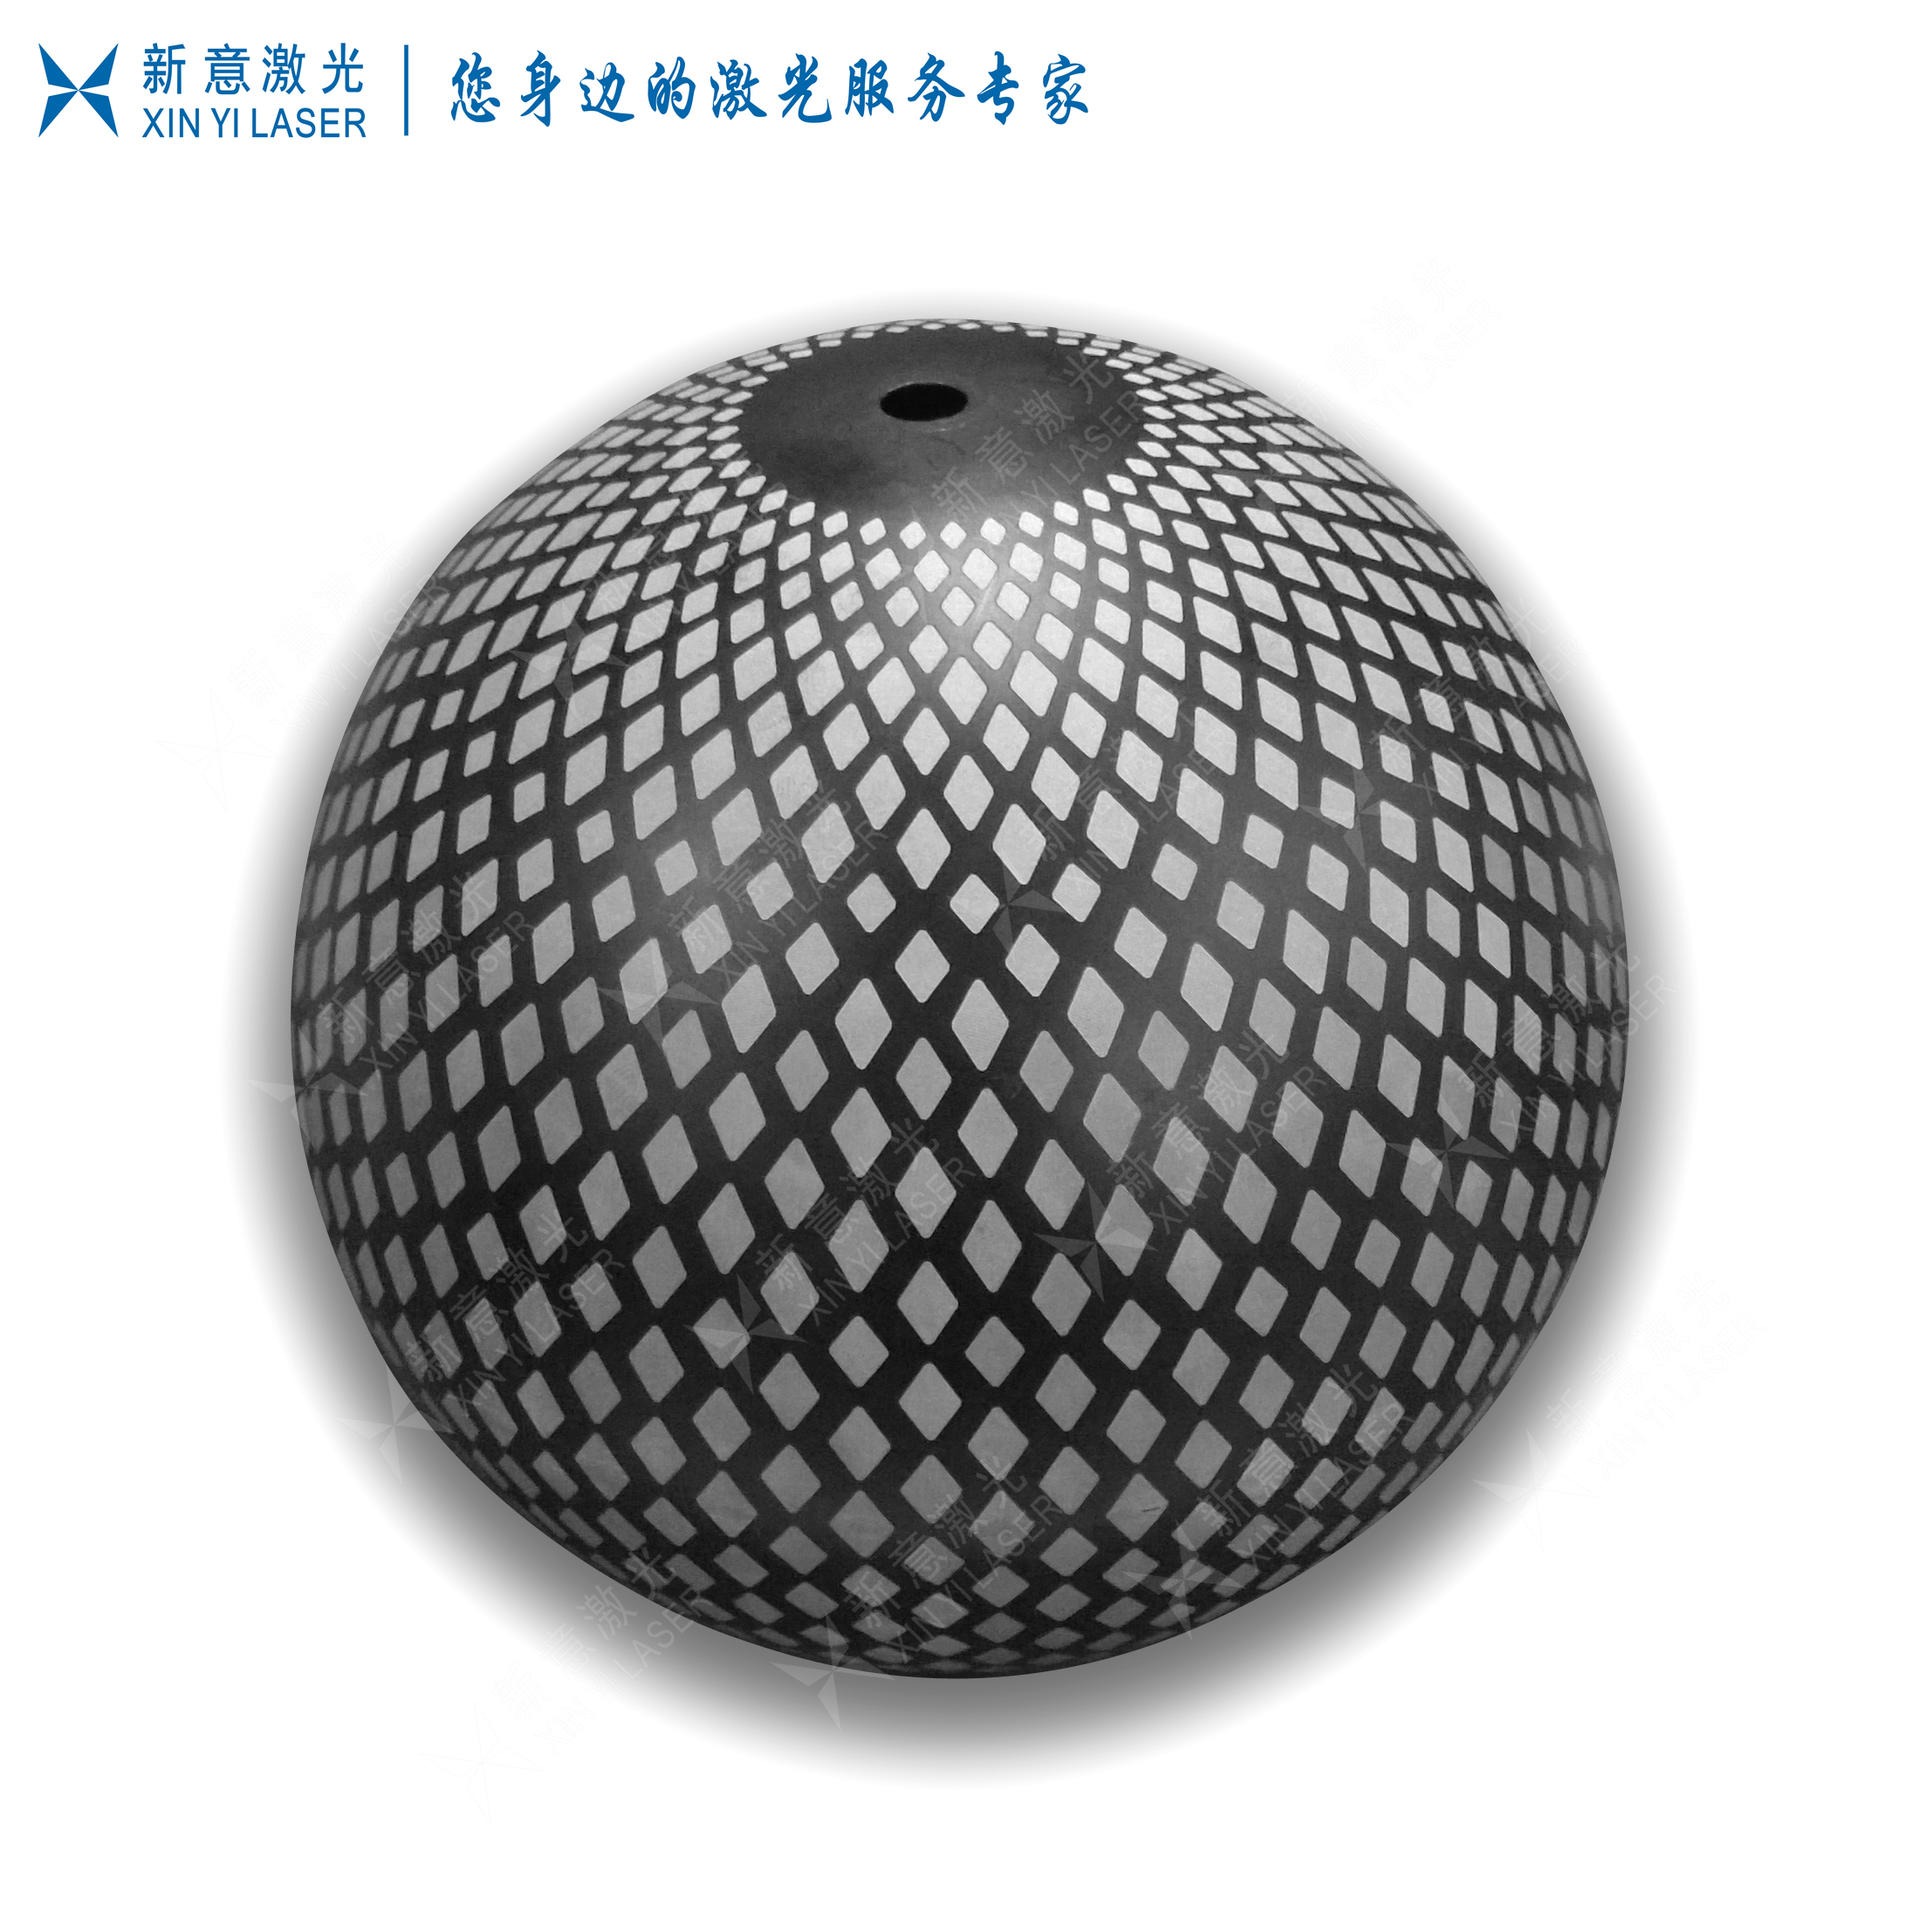 3D激光打标加工 提供圆柱 圆锥 球形产品 3D激光镭射加工 3D激光雕刻加工 3D激光加工 3D激光镭雕加工图片